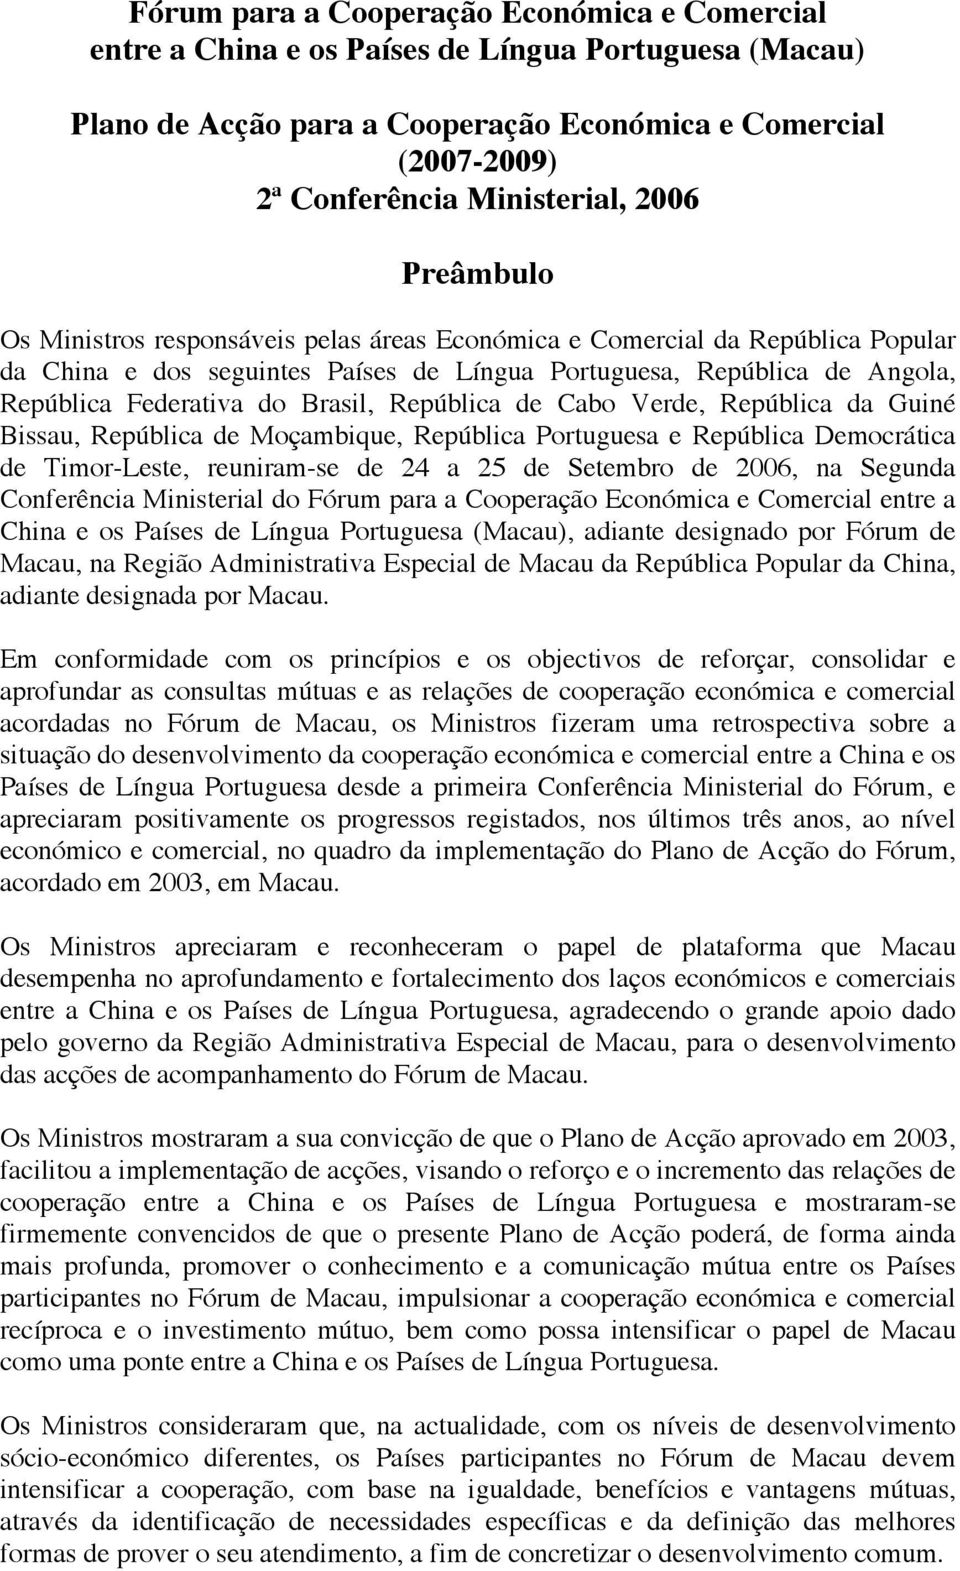 Brasil, República de Cabo Verde, República da Guiné Bissau, República de Moçambique, República Portuguesa e República Democrática de Timor-Leste, reuniram-se de 24 a 25 de Setembro de 2006, na